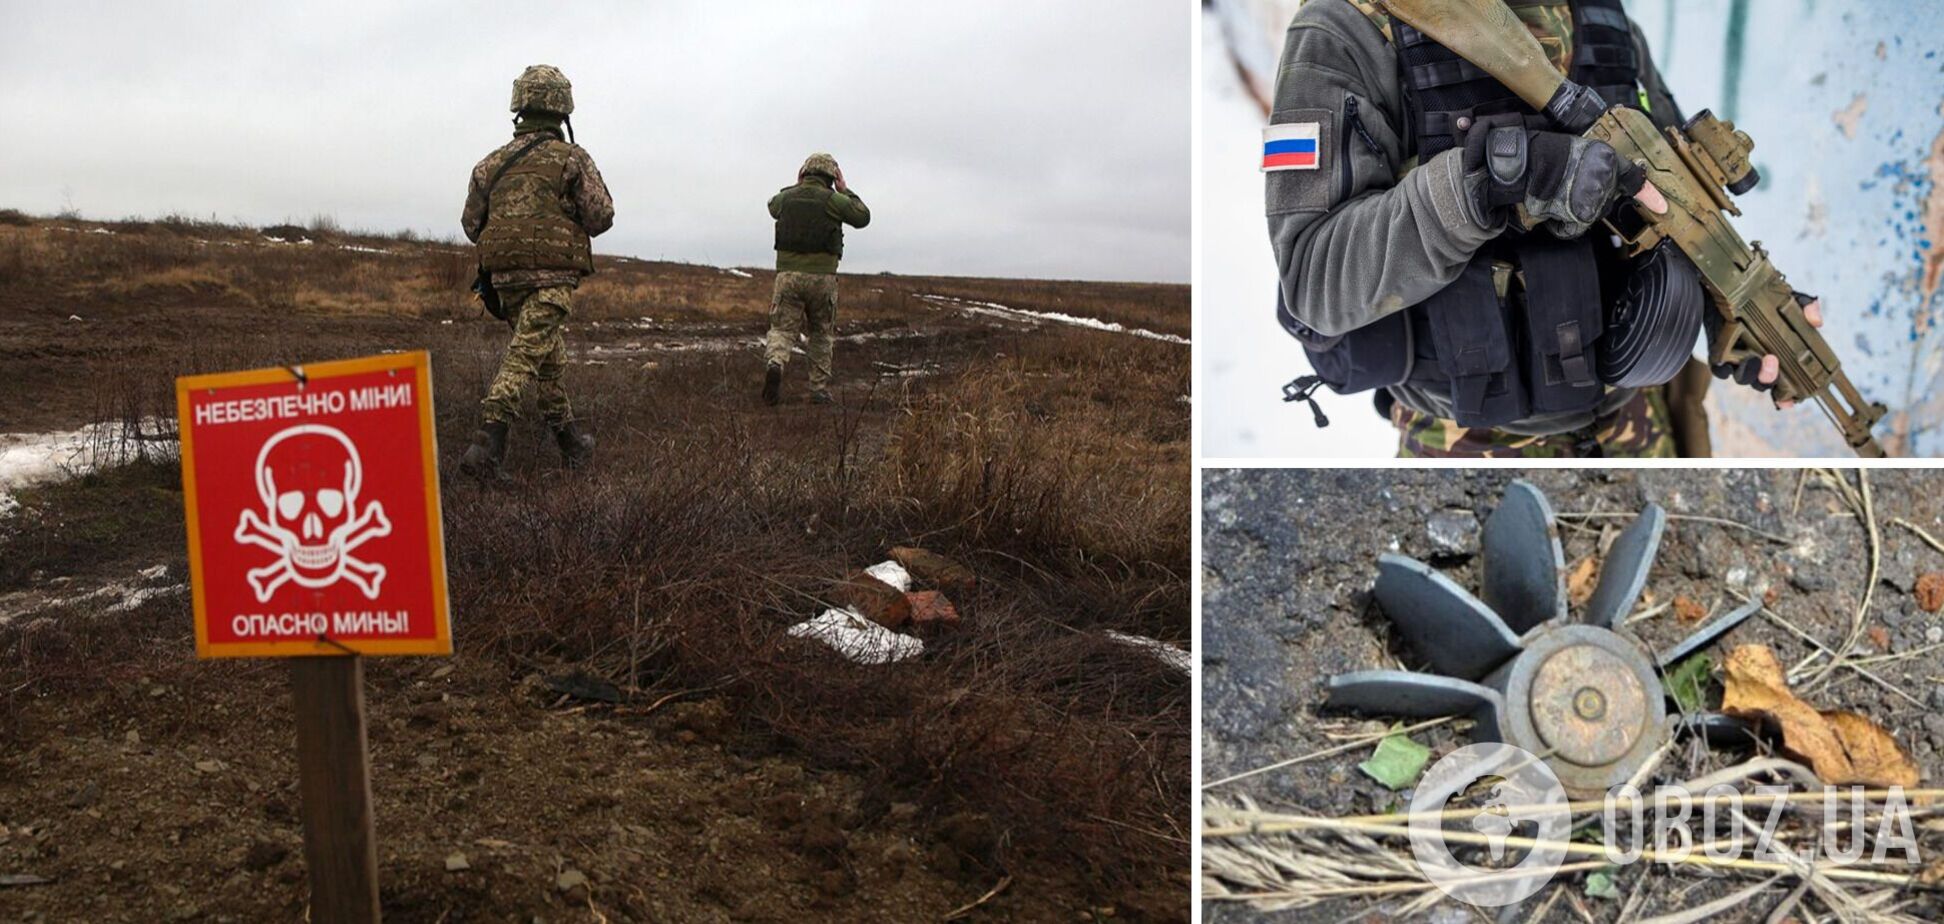 Войска РФ обустраивают минные поля для обороны в Украине